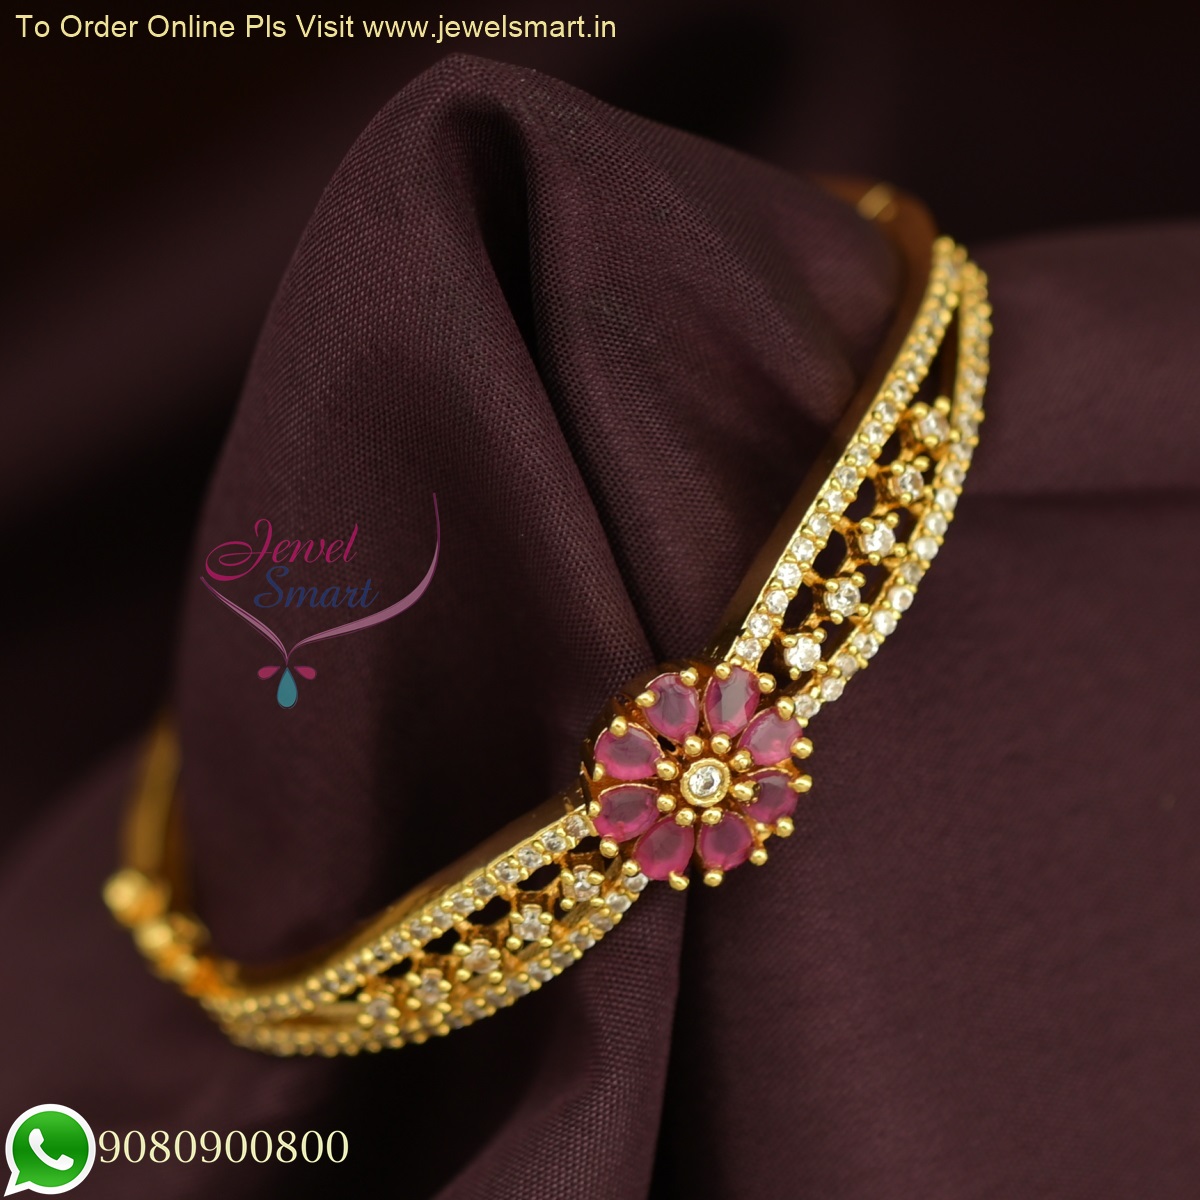 Buy quality 18k Dimond Rose Gold Bracelet For women in Ahmedabad